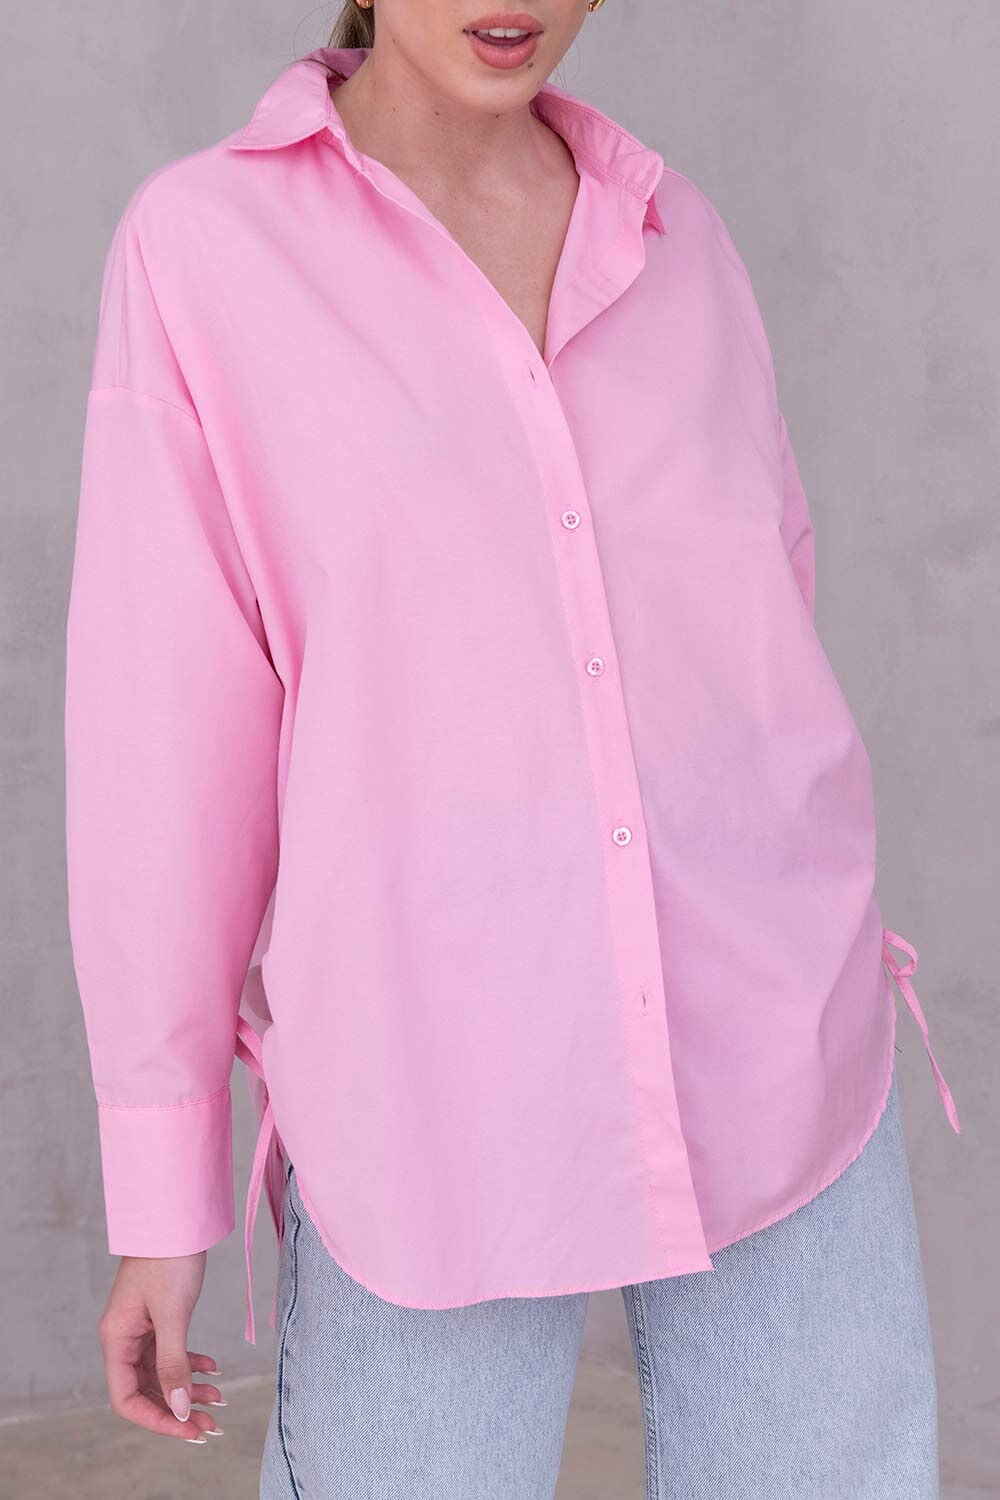 חולצת אוברסייז וולר TwentySix Pink One Size 